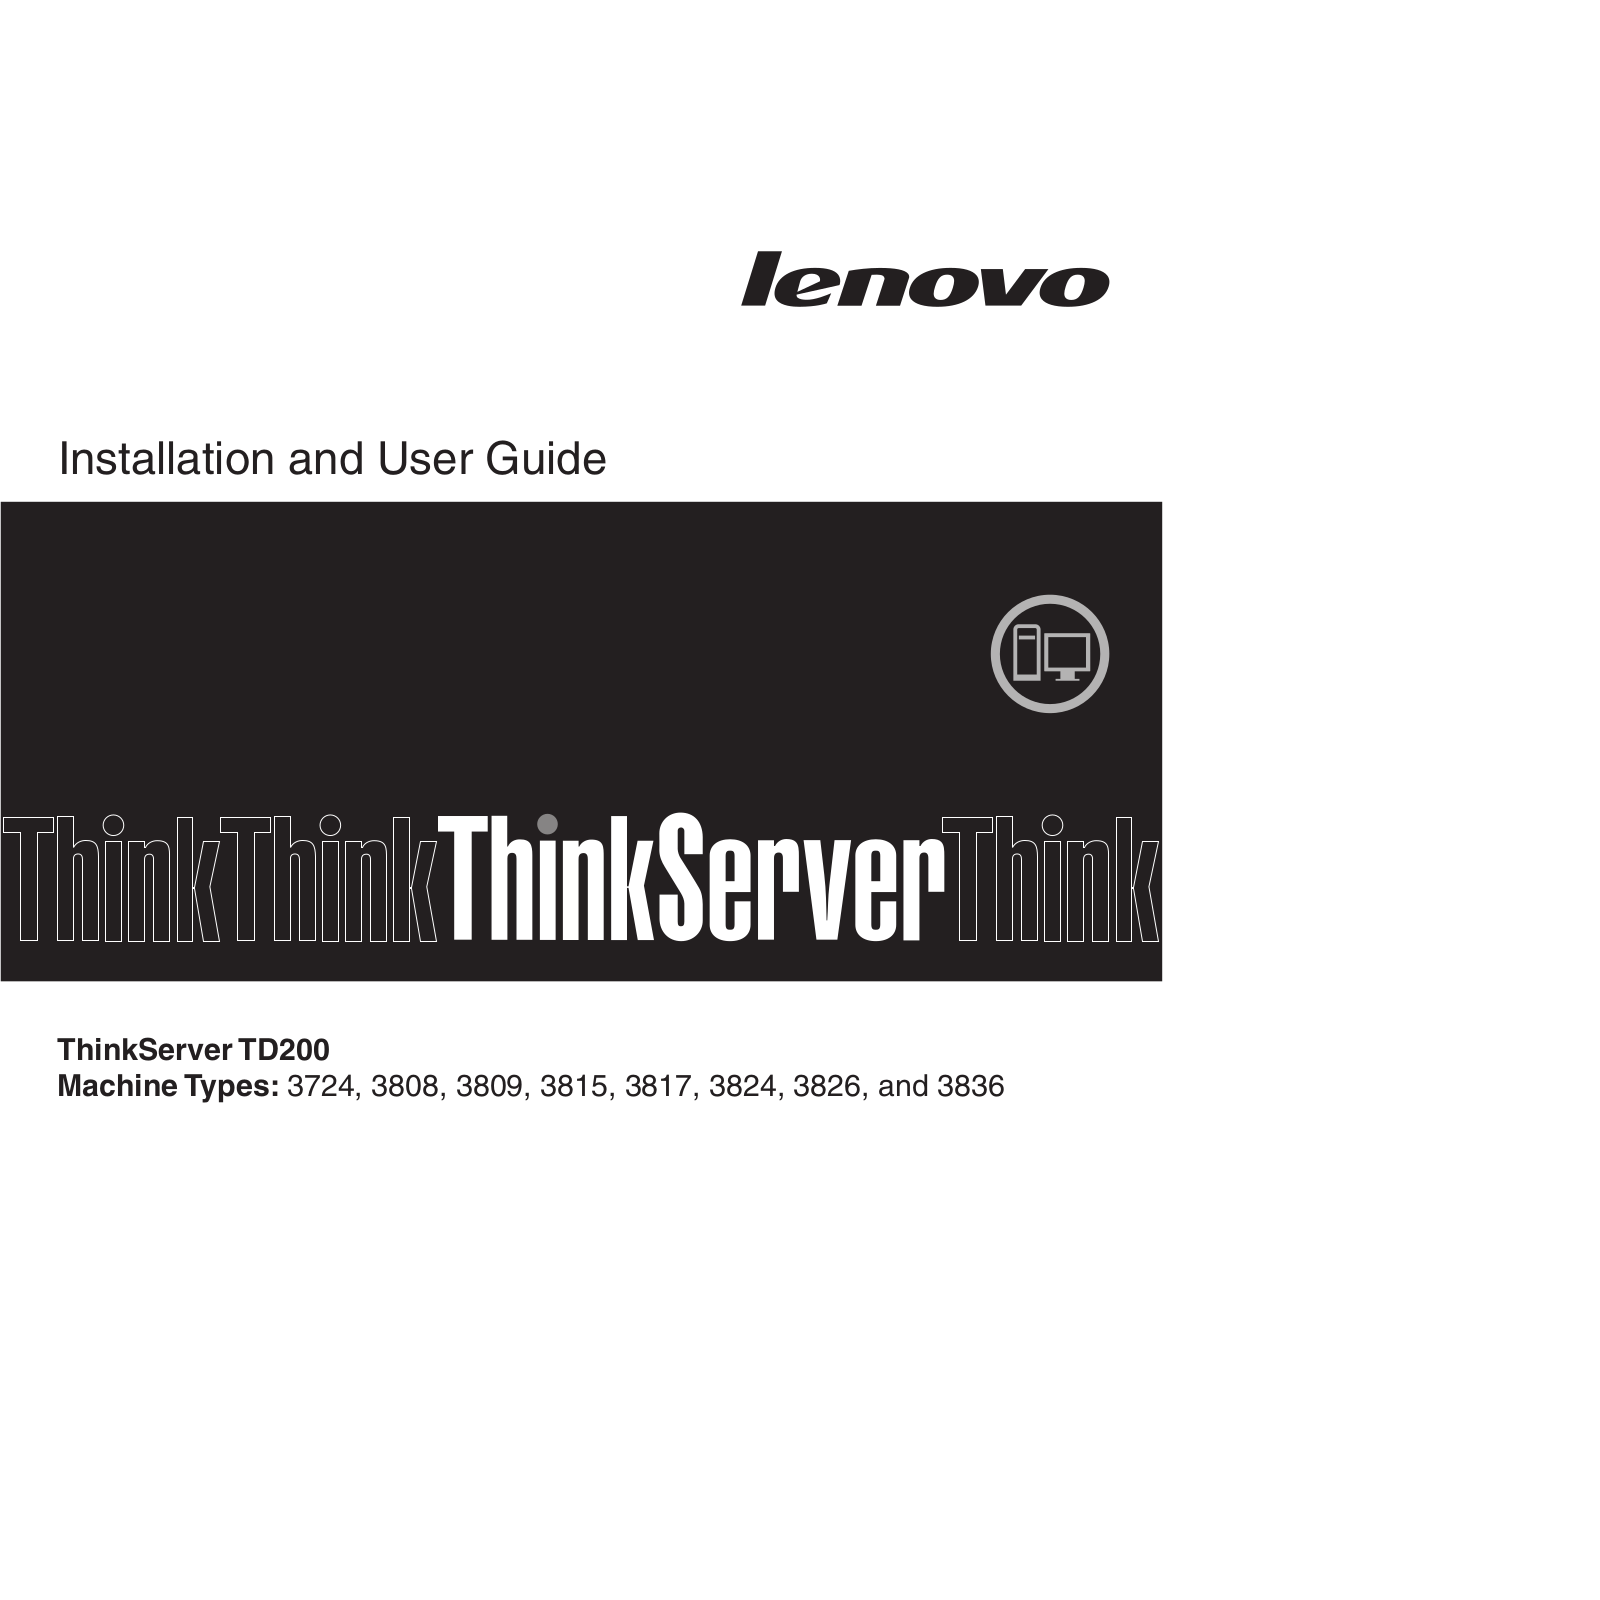 Lenovo 3808, 3809, 3824, 3815, 3817 User Manual